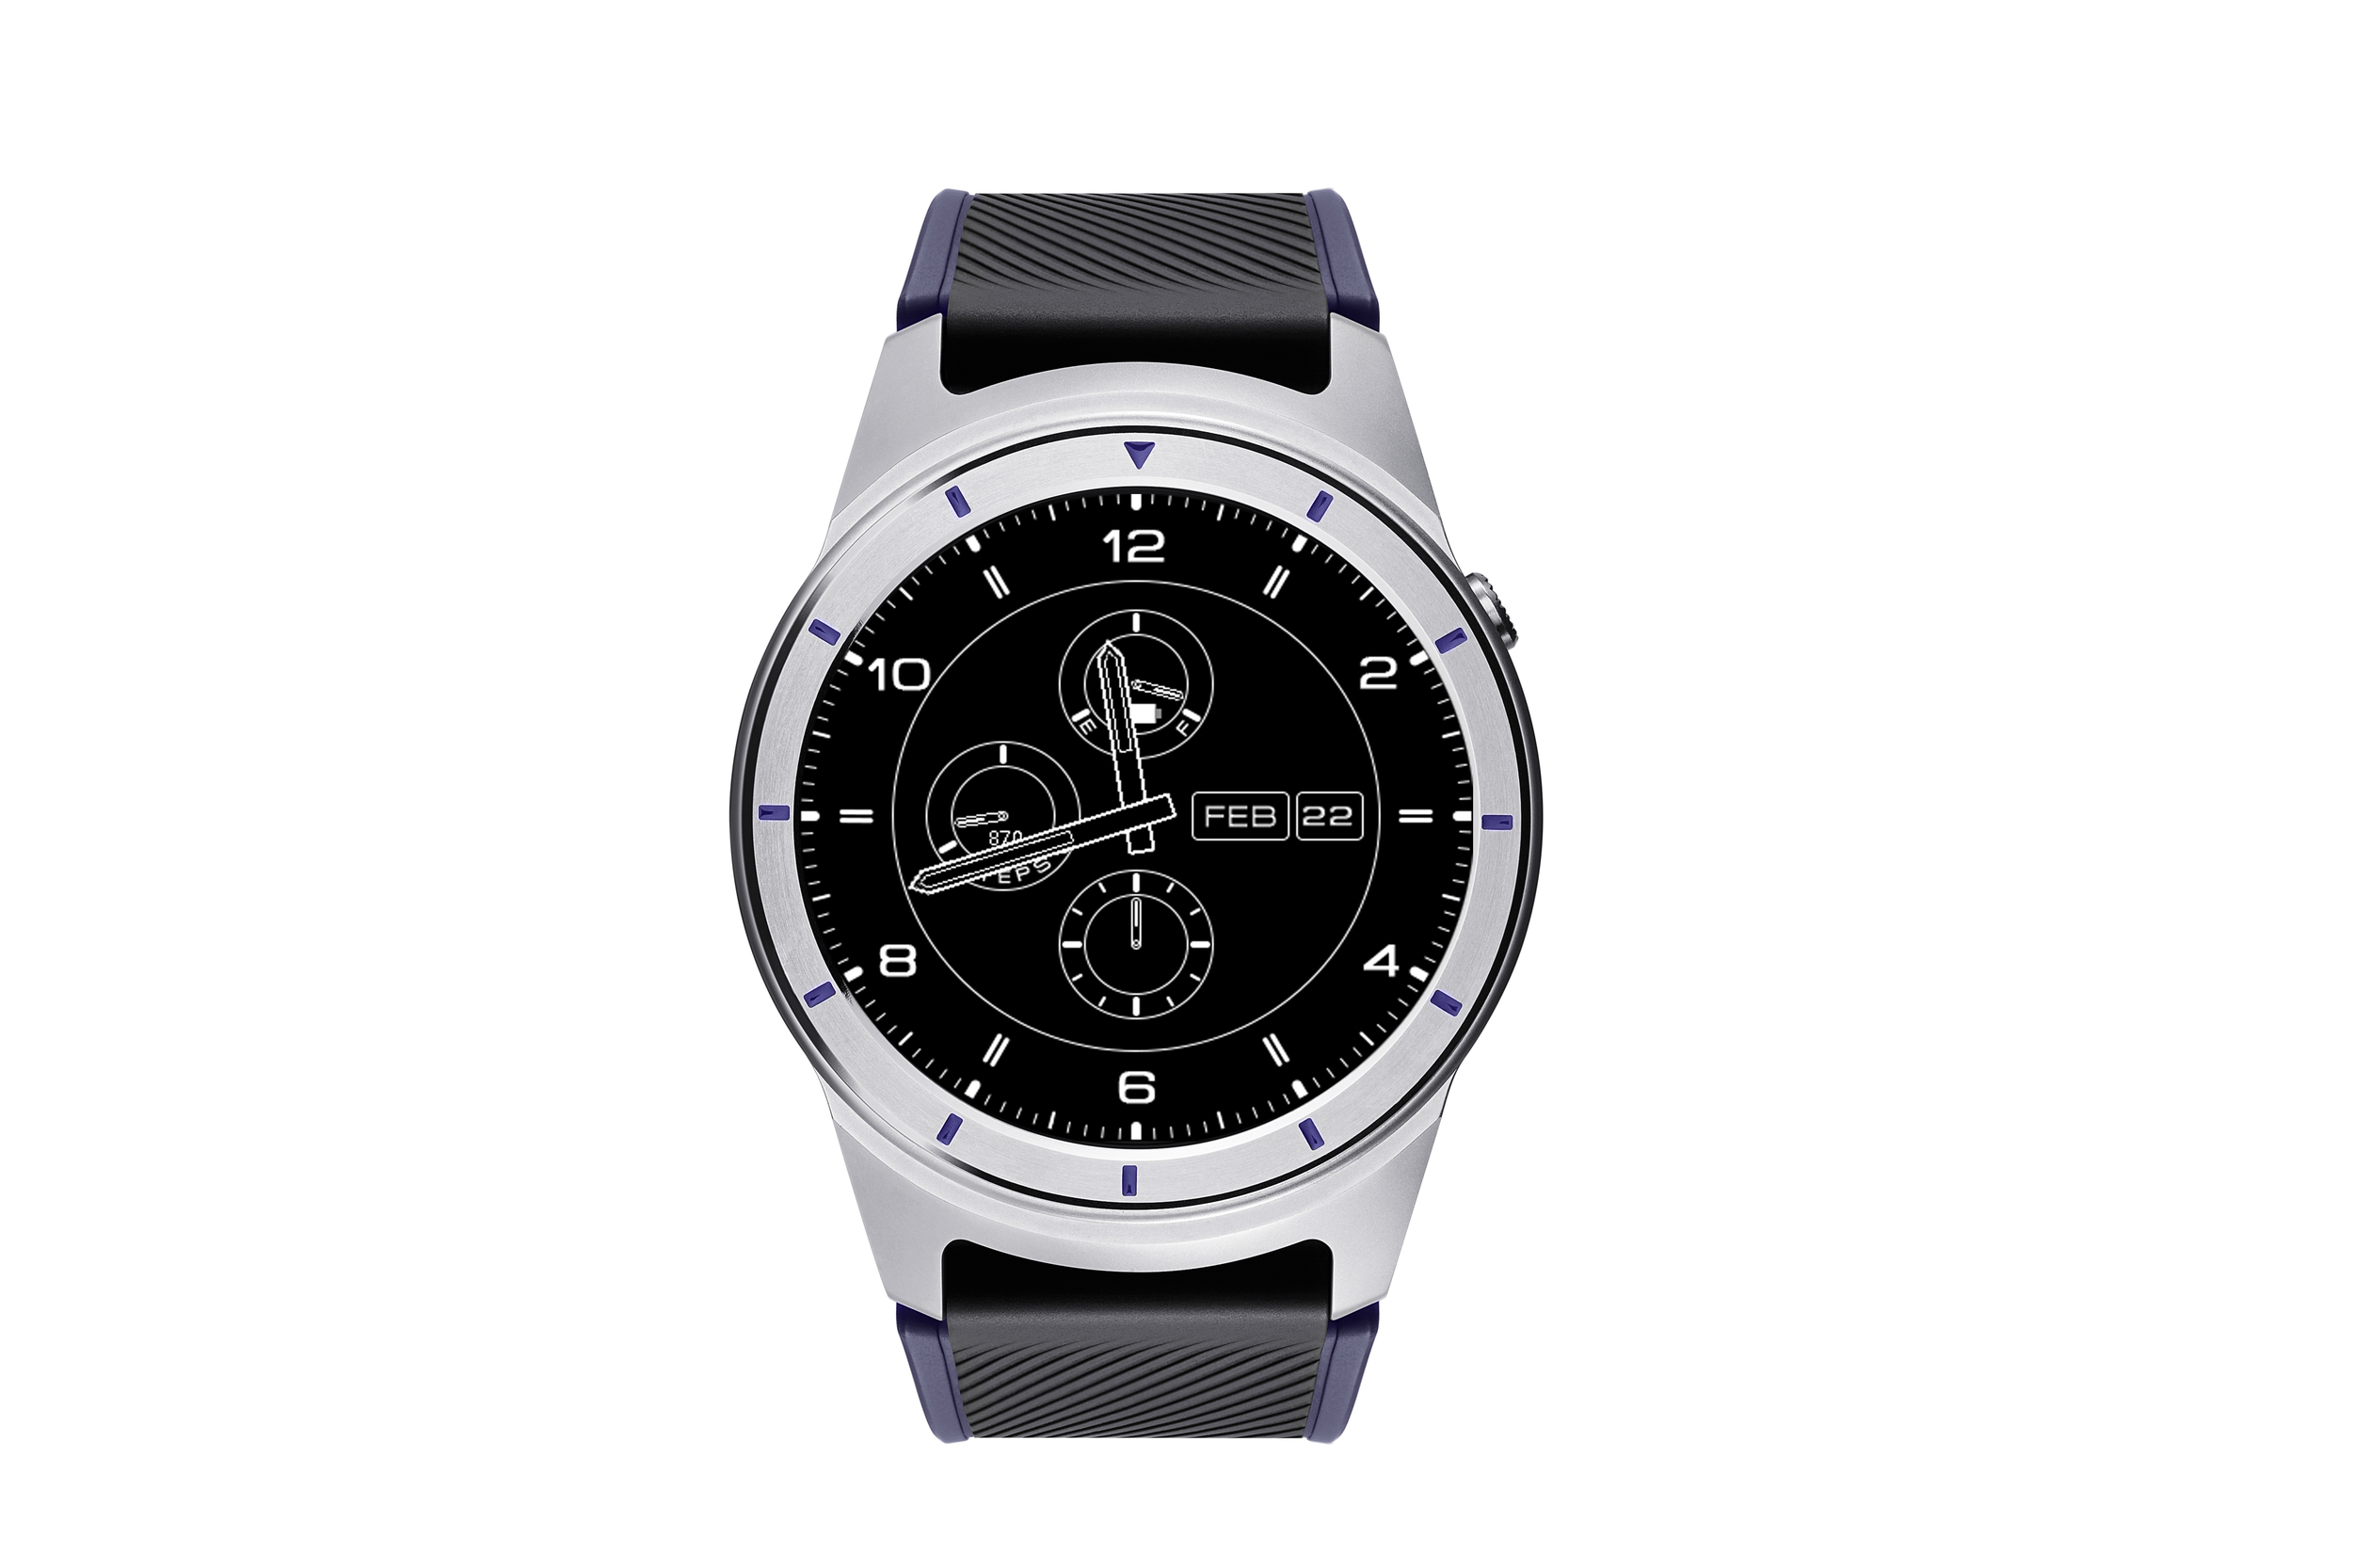 ZTE Quartz Android Wear 2.0 smartwatch